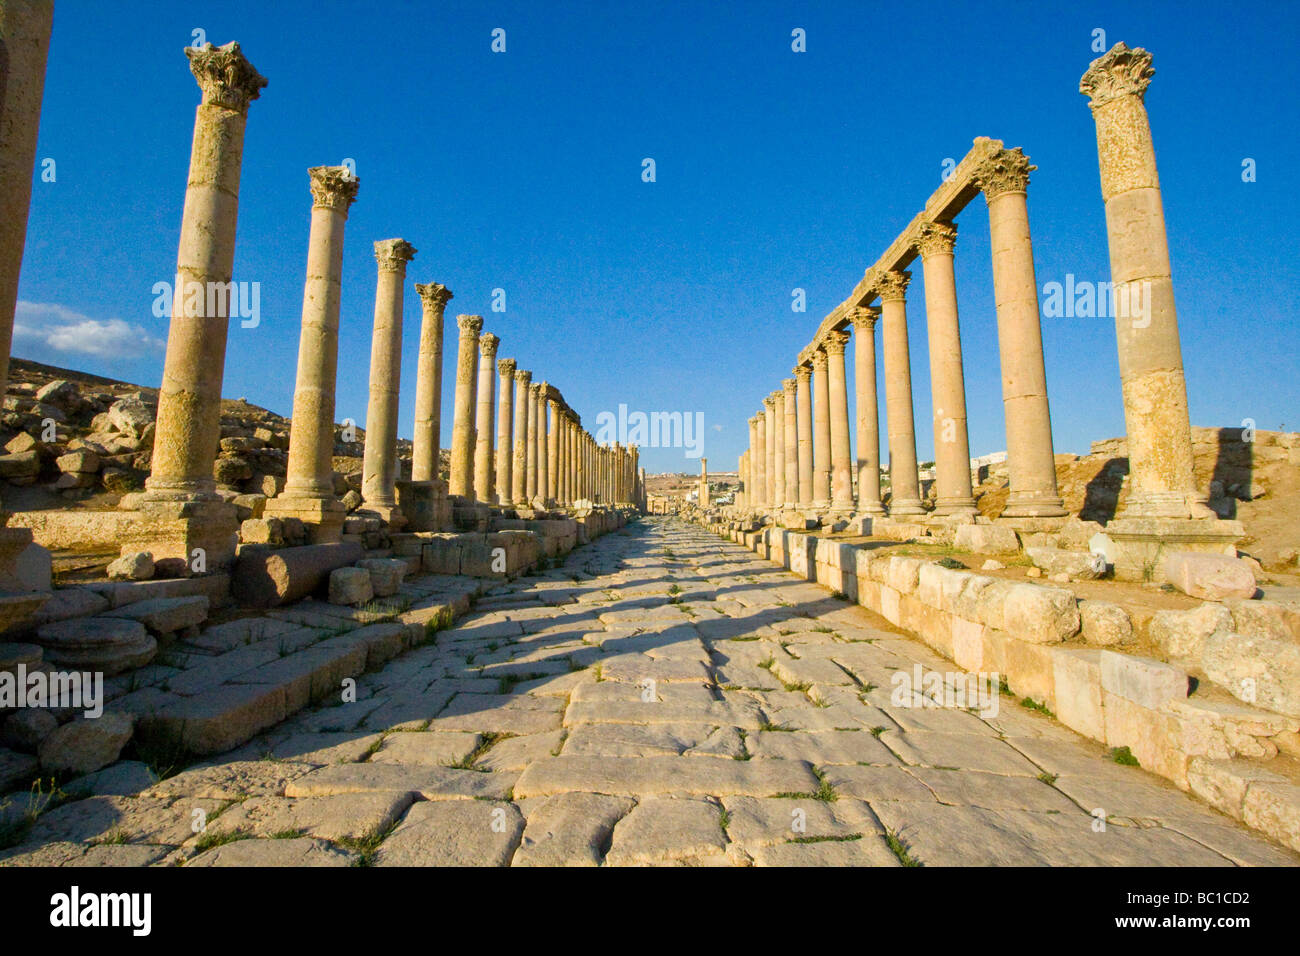 Cardo Maximus Columnade at the Roman Ruins of Jerash in Jordan Stock Photo